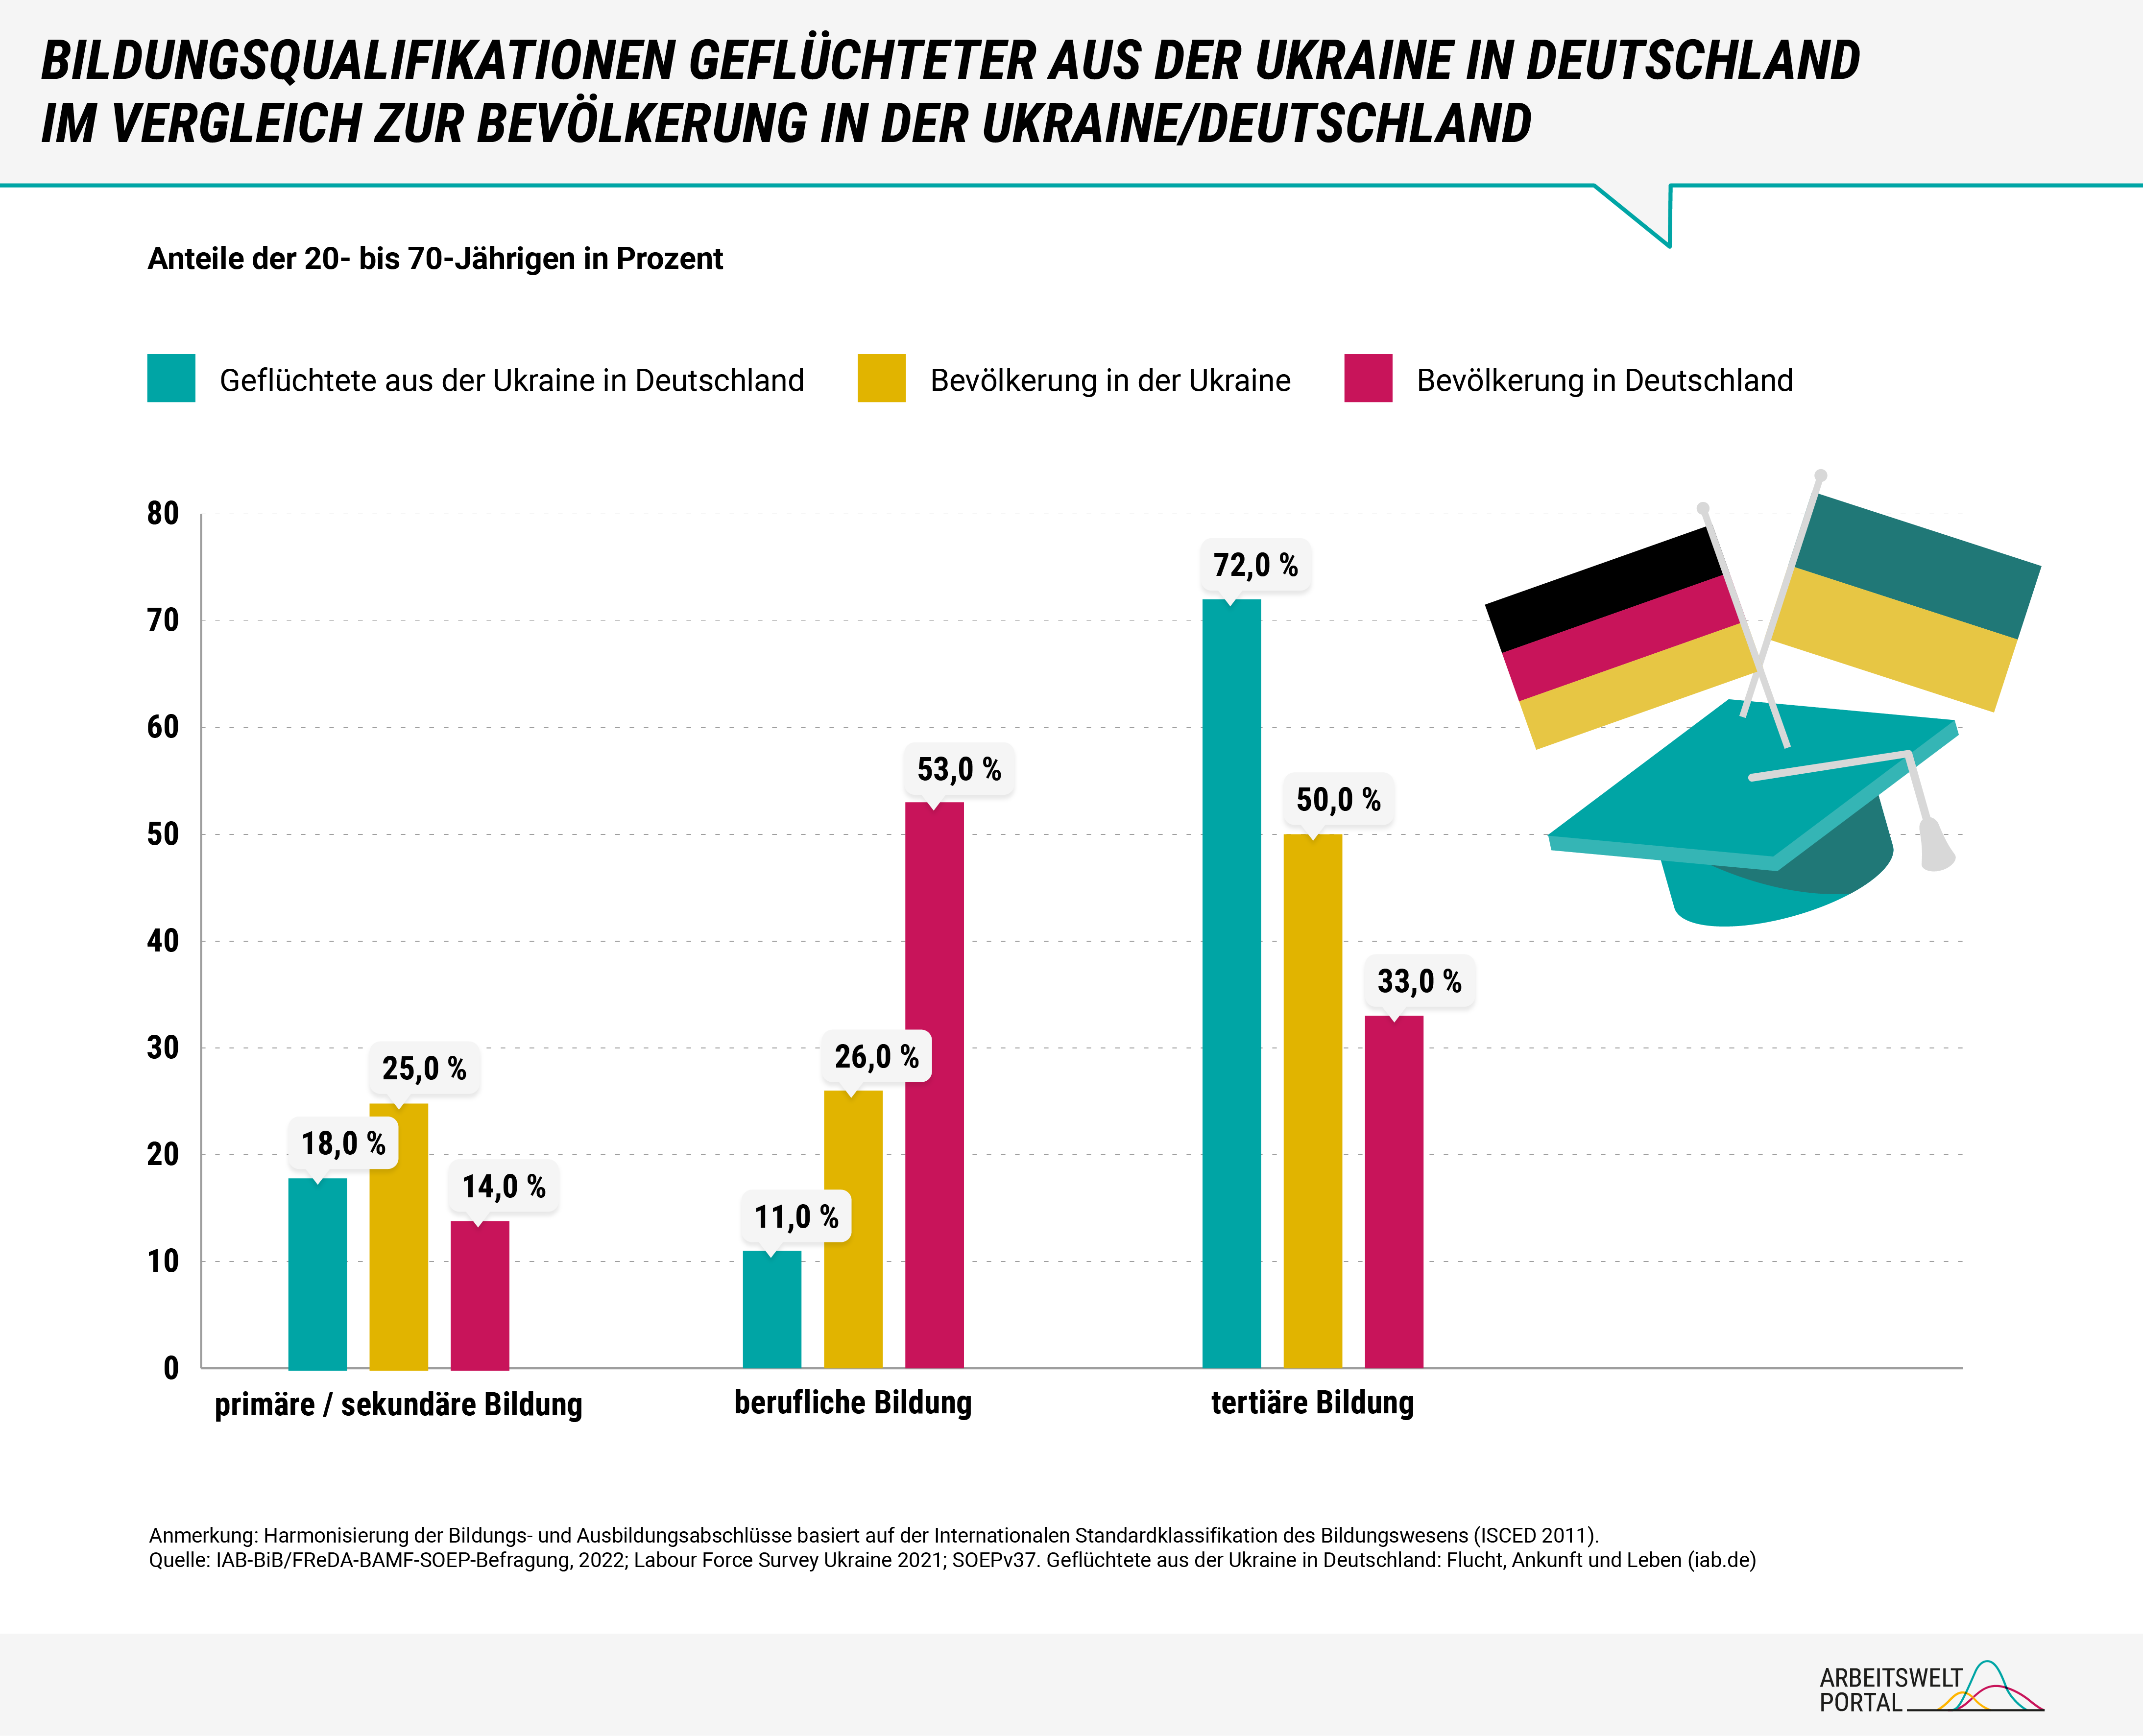 Vergleich Bildungsqualifikationen Geflüchteter aus der Ukraine, Bevölkerung Ukraine und Bevölkerung Deutschland